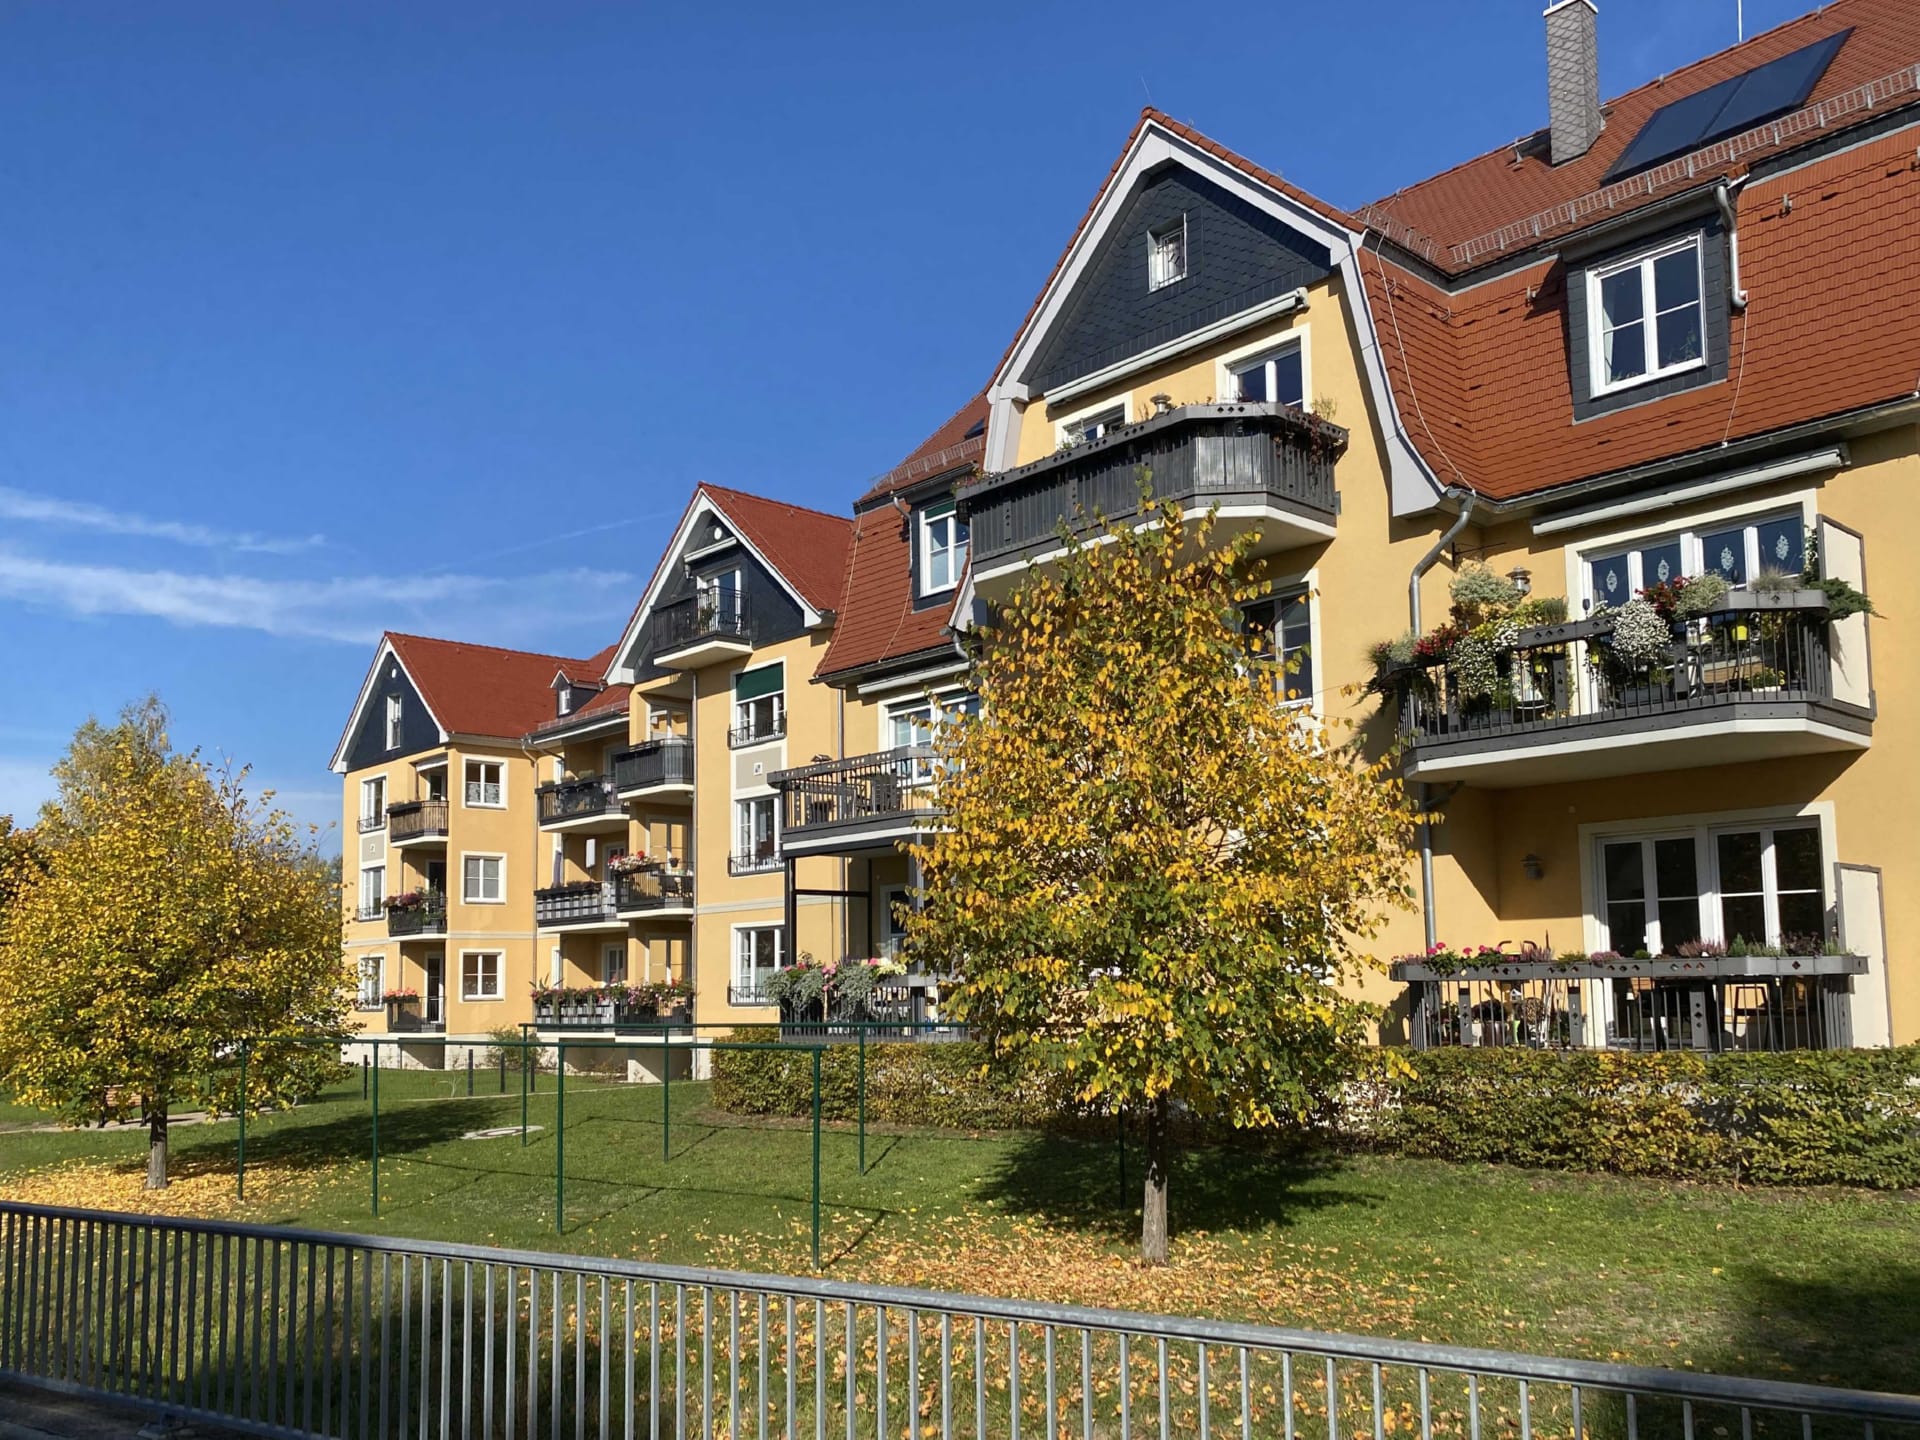 Ottendorf-Okrilla, Neubau von Mehrfamilienhäusern mit 26 Wohneinheiten, Bauabschnitt 2015-2017